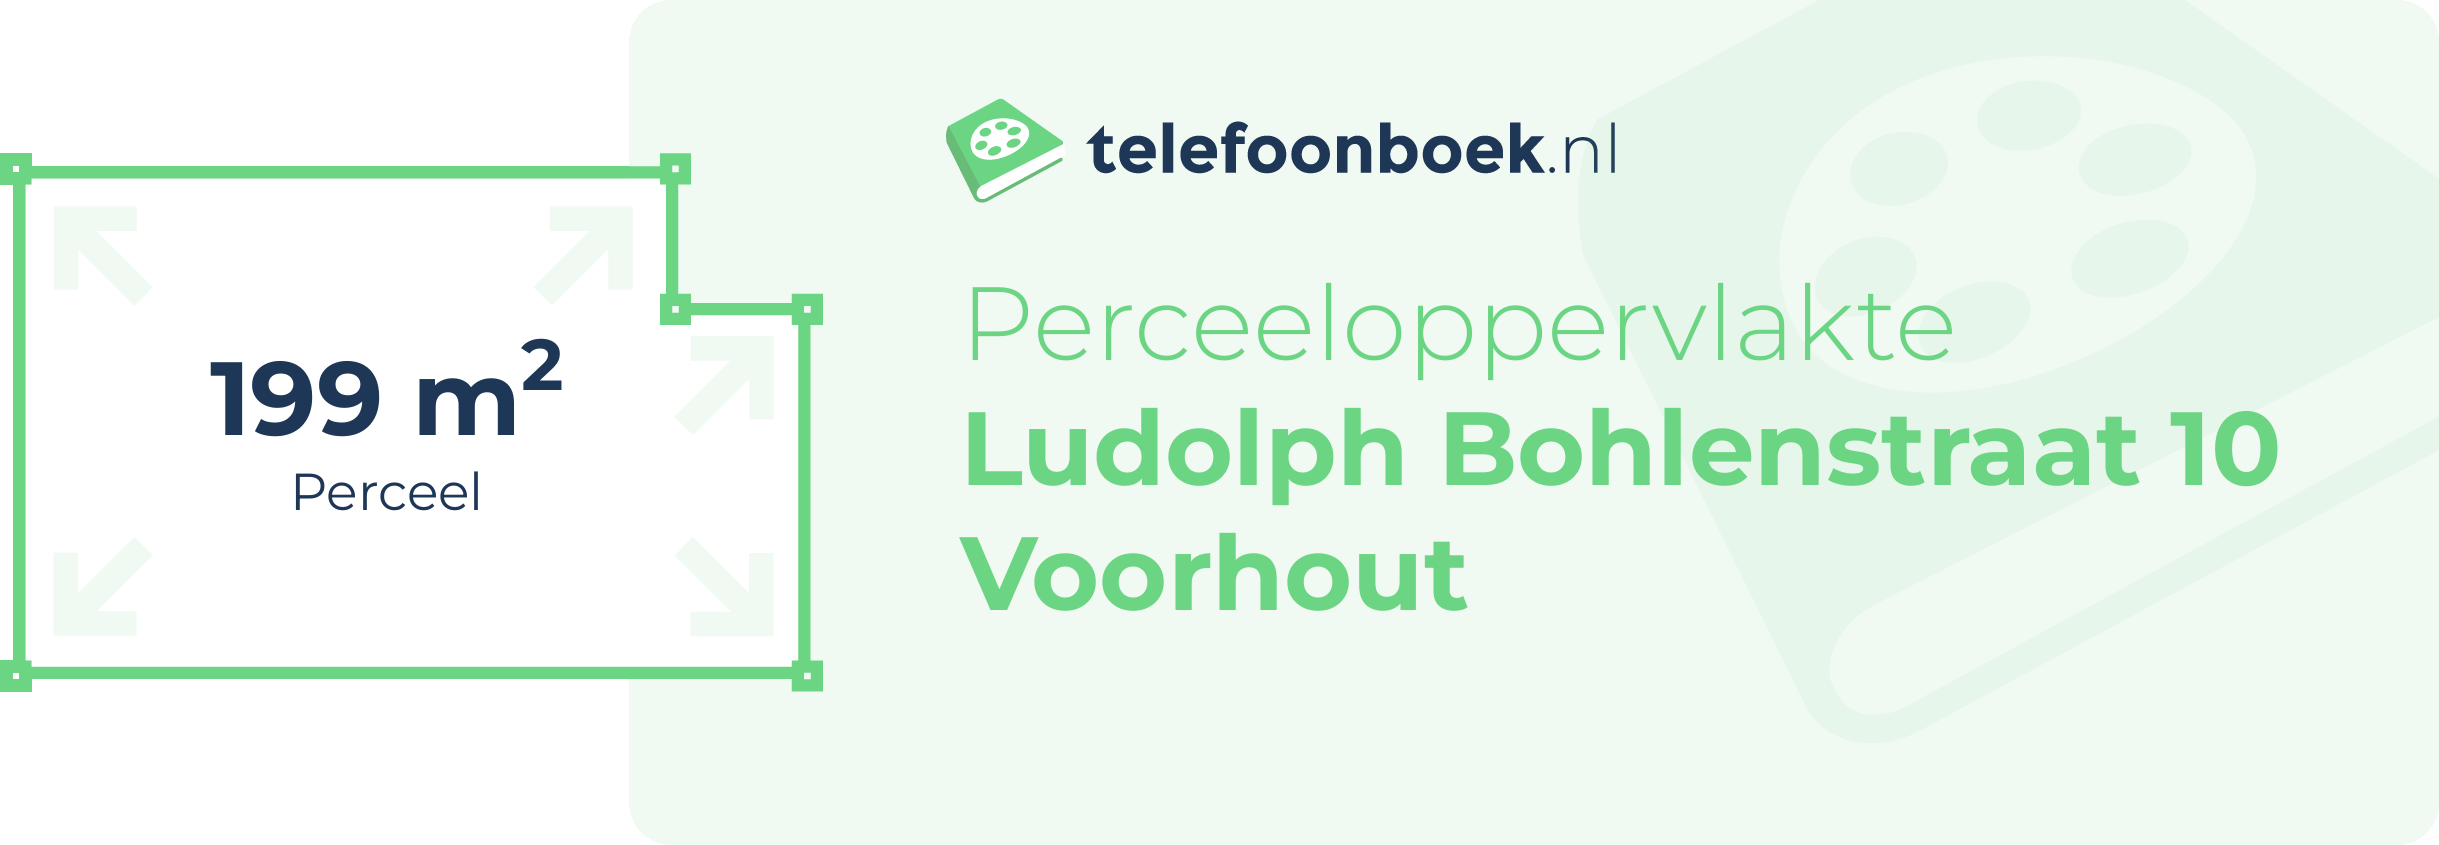 Perceeloppervlakte Ludolph Bohlenstraat 10 Voorhout